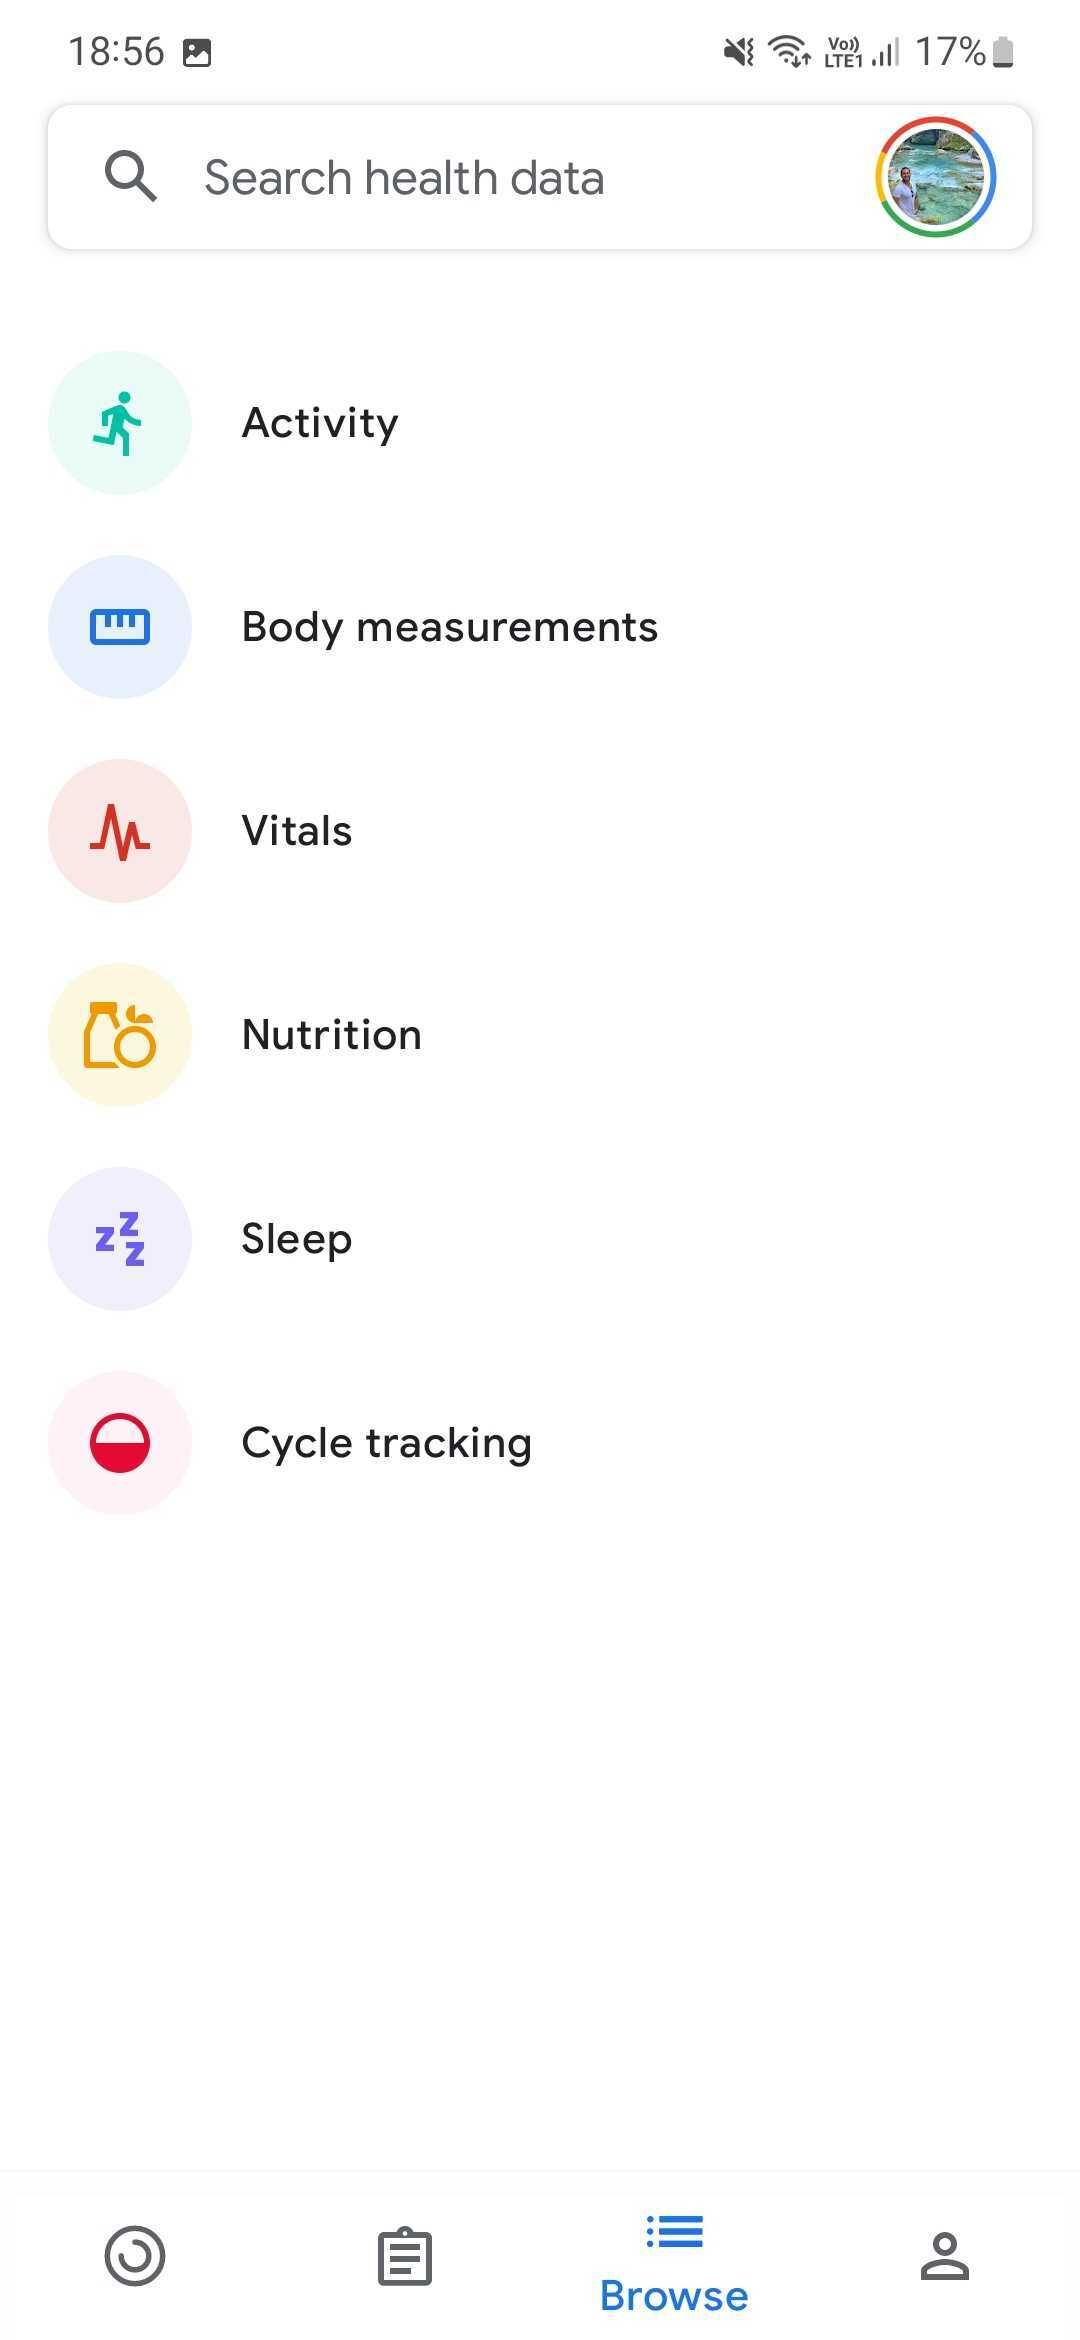 Captura de tela do aplicativo Google Fit mostrando os vários elementos de seus registros e faixas